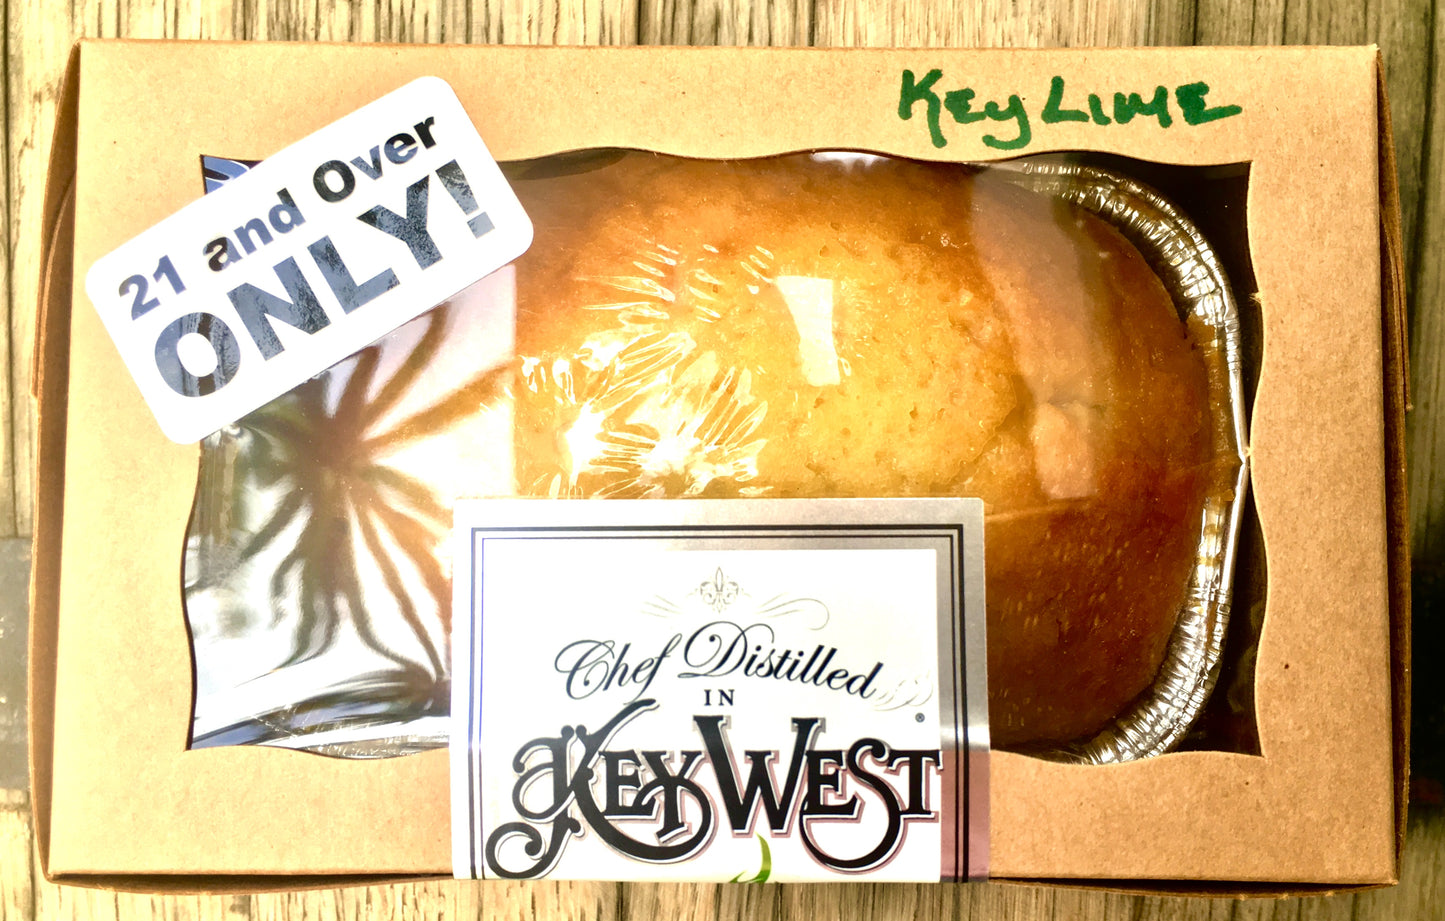 Key West Legal Cake - Key West First Legal Rum Distillery